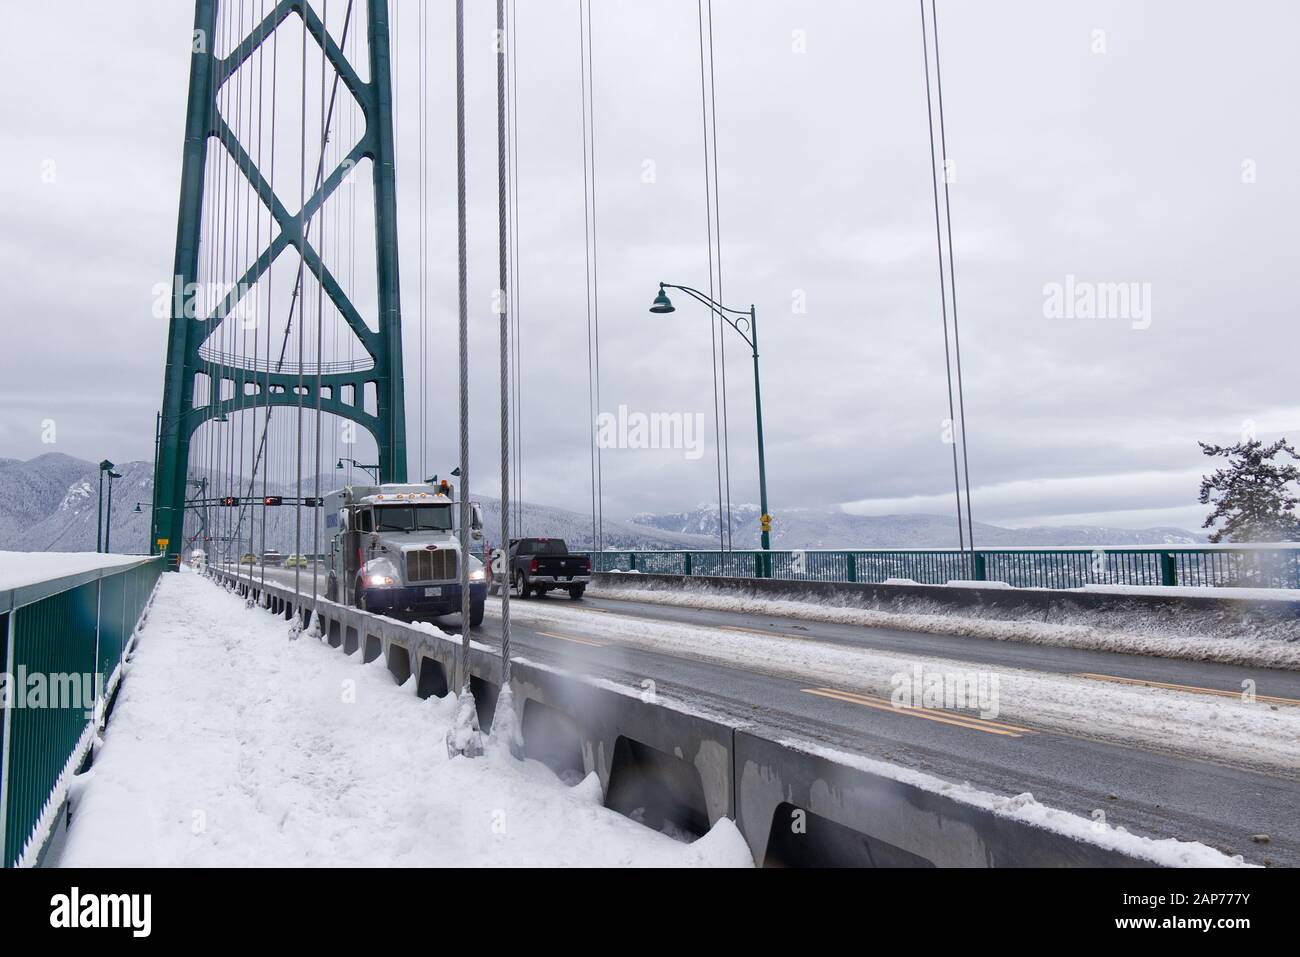 Vancouver, Canadá - 15 de enero de 2020: Una vista del puente Lions Gate cubierto de nieve. Tormenta de nieve y clima extremo en Vancouver. Foto de stock